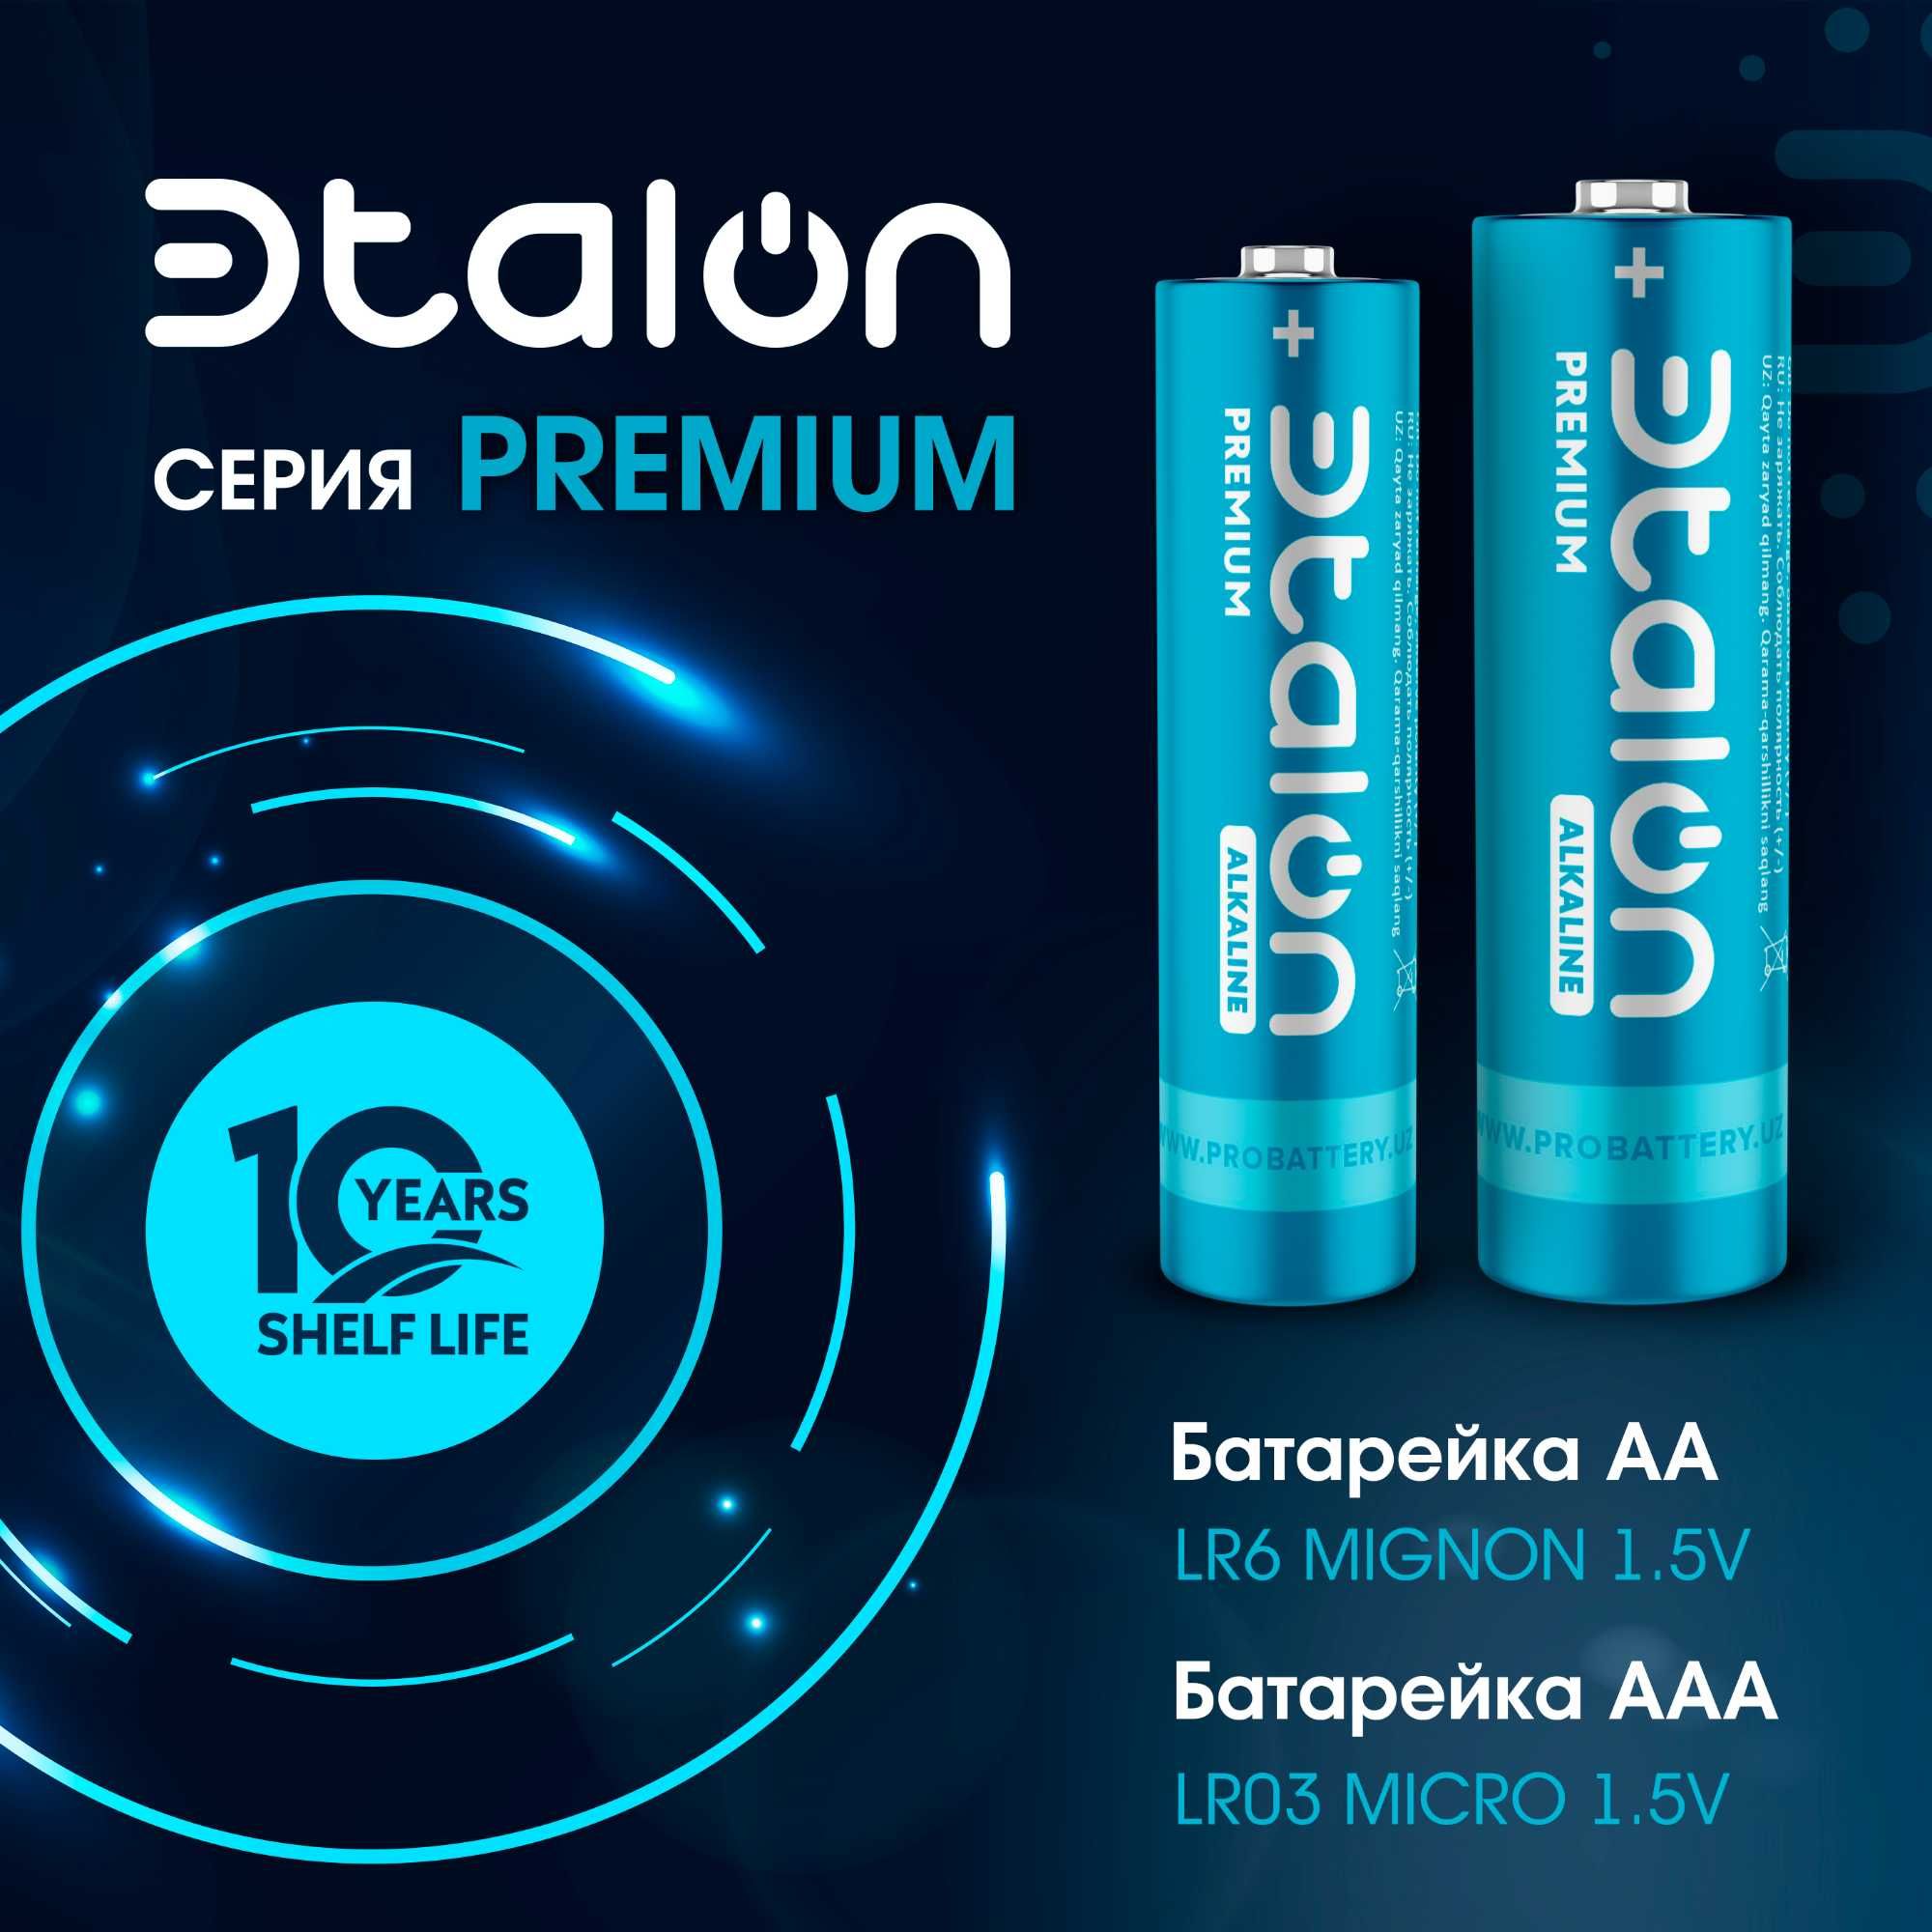 Батарейки алкалиновые премиум класса ЭTALON LR6 (AA) 12 шт на блистере